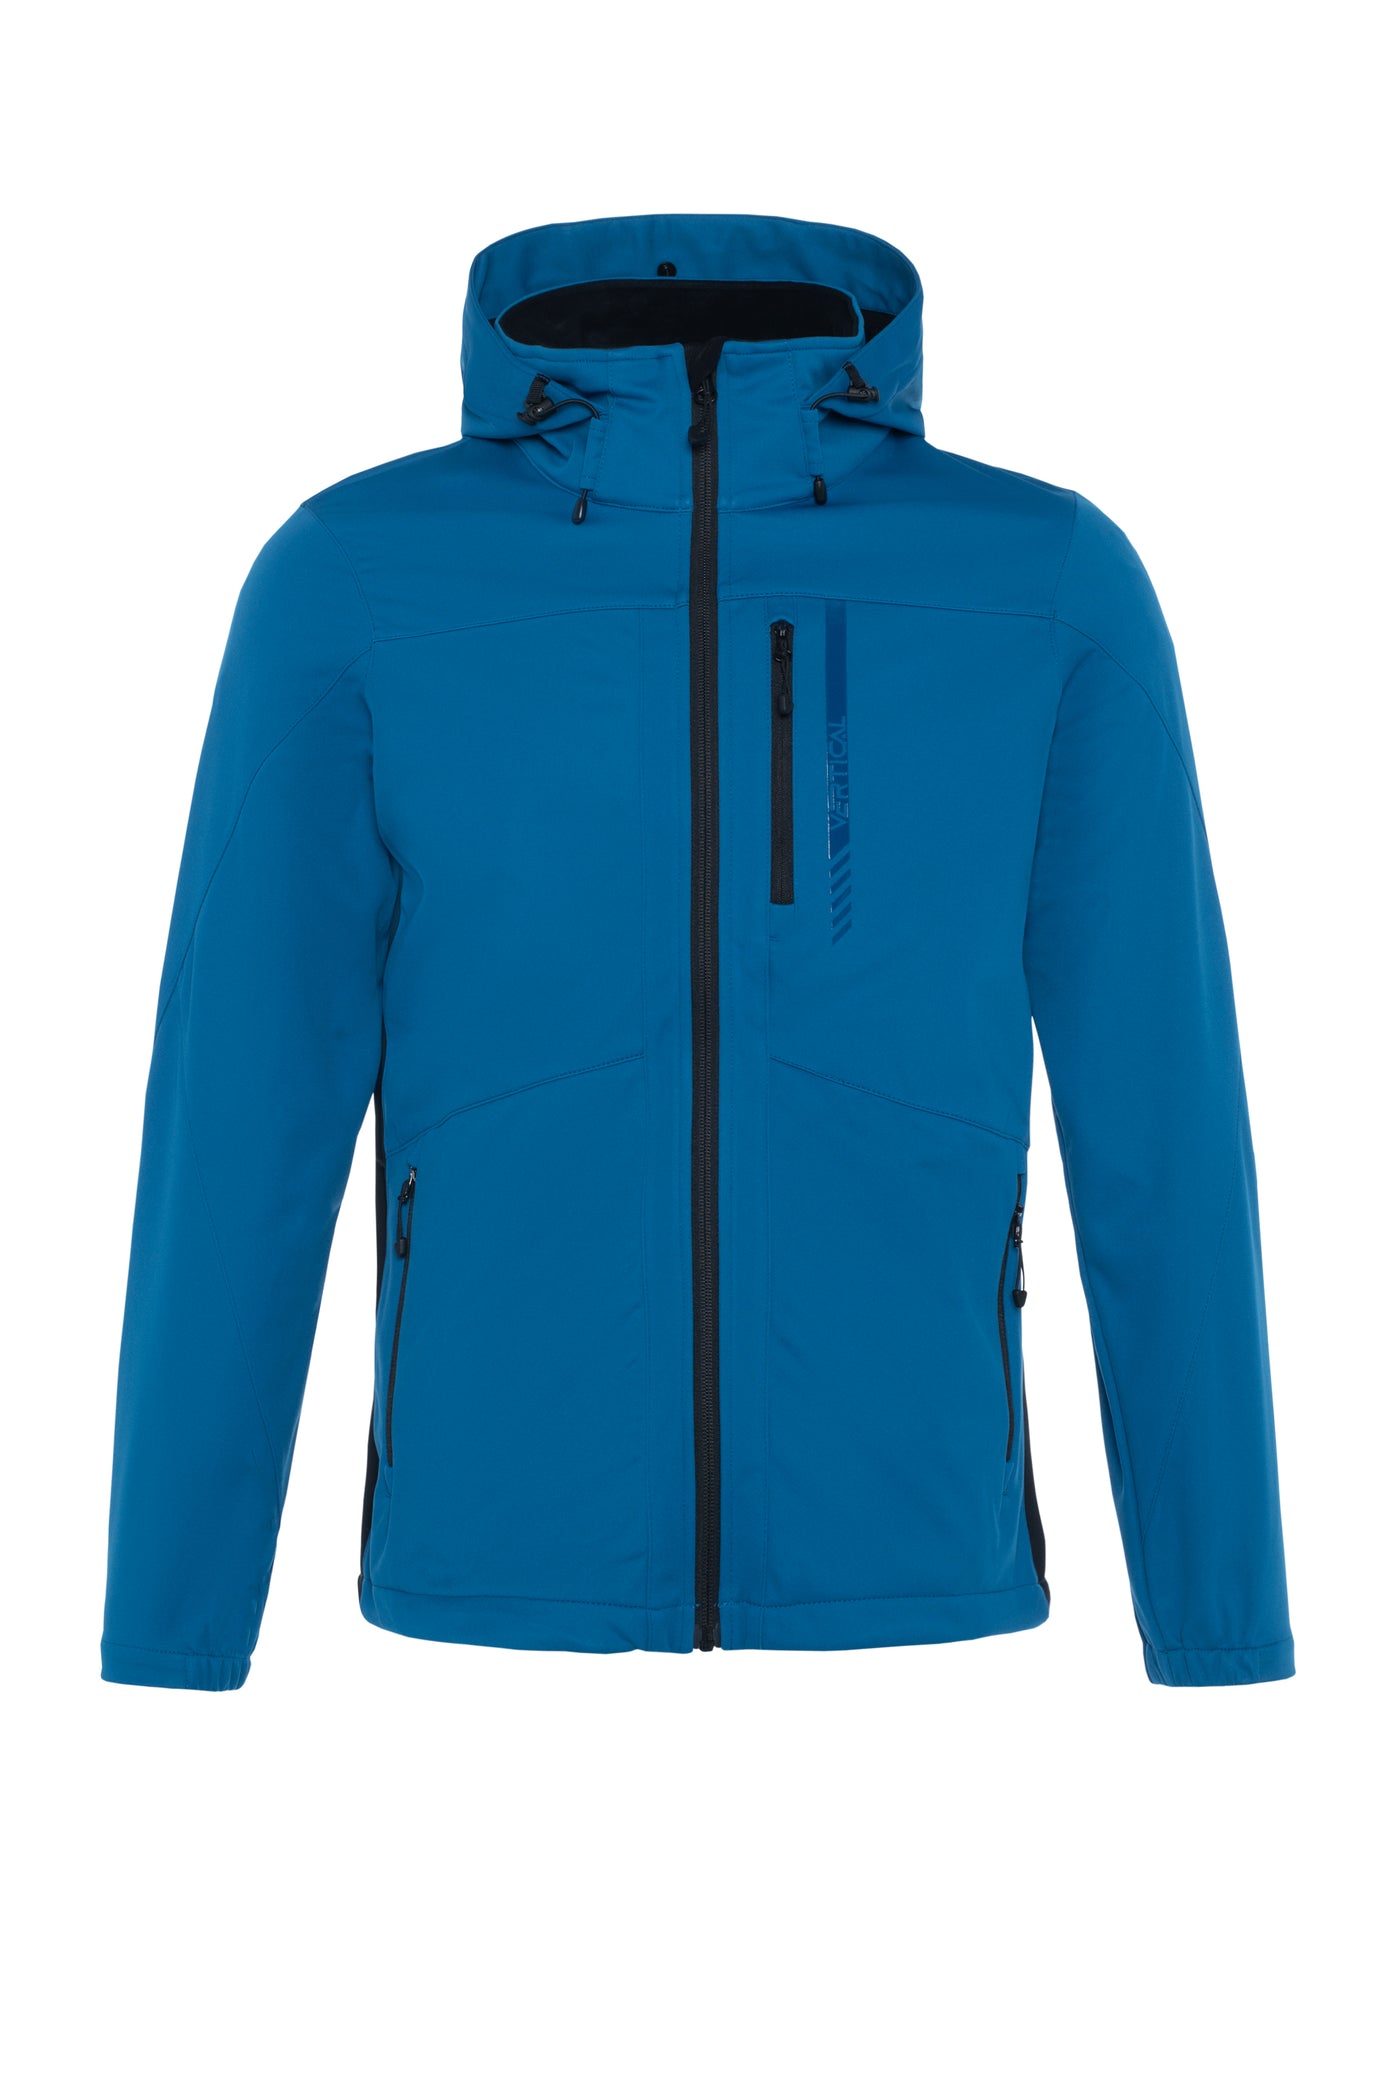 Cross-country ski jacket Skadi - Men's